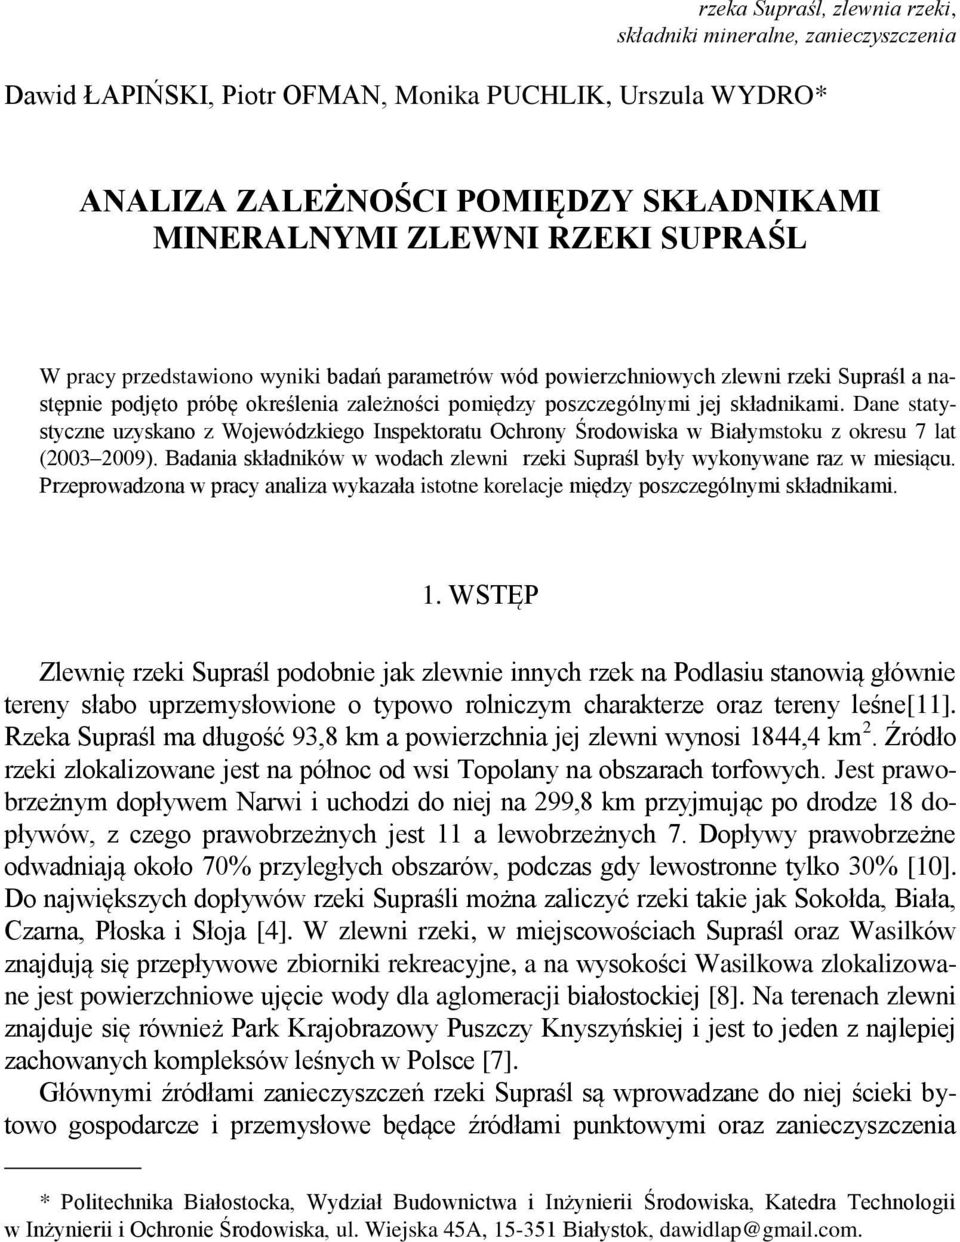 Dane statystyczne uzyskano z Wojewódzkiego Inspektoratu Ochrony Środowiska w Białymstoku z okresu 7 lat (2003 2009). Badania składników w wodach zlewni rzeki Supraśl były wykonywane raz w miesiącu.